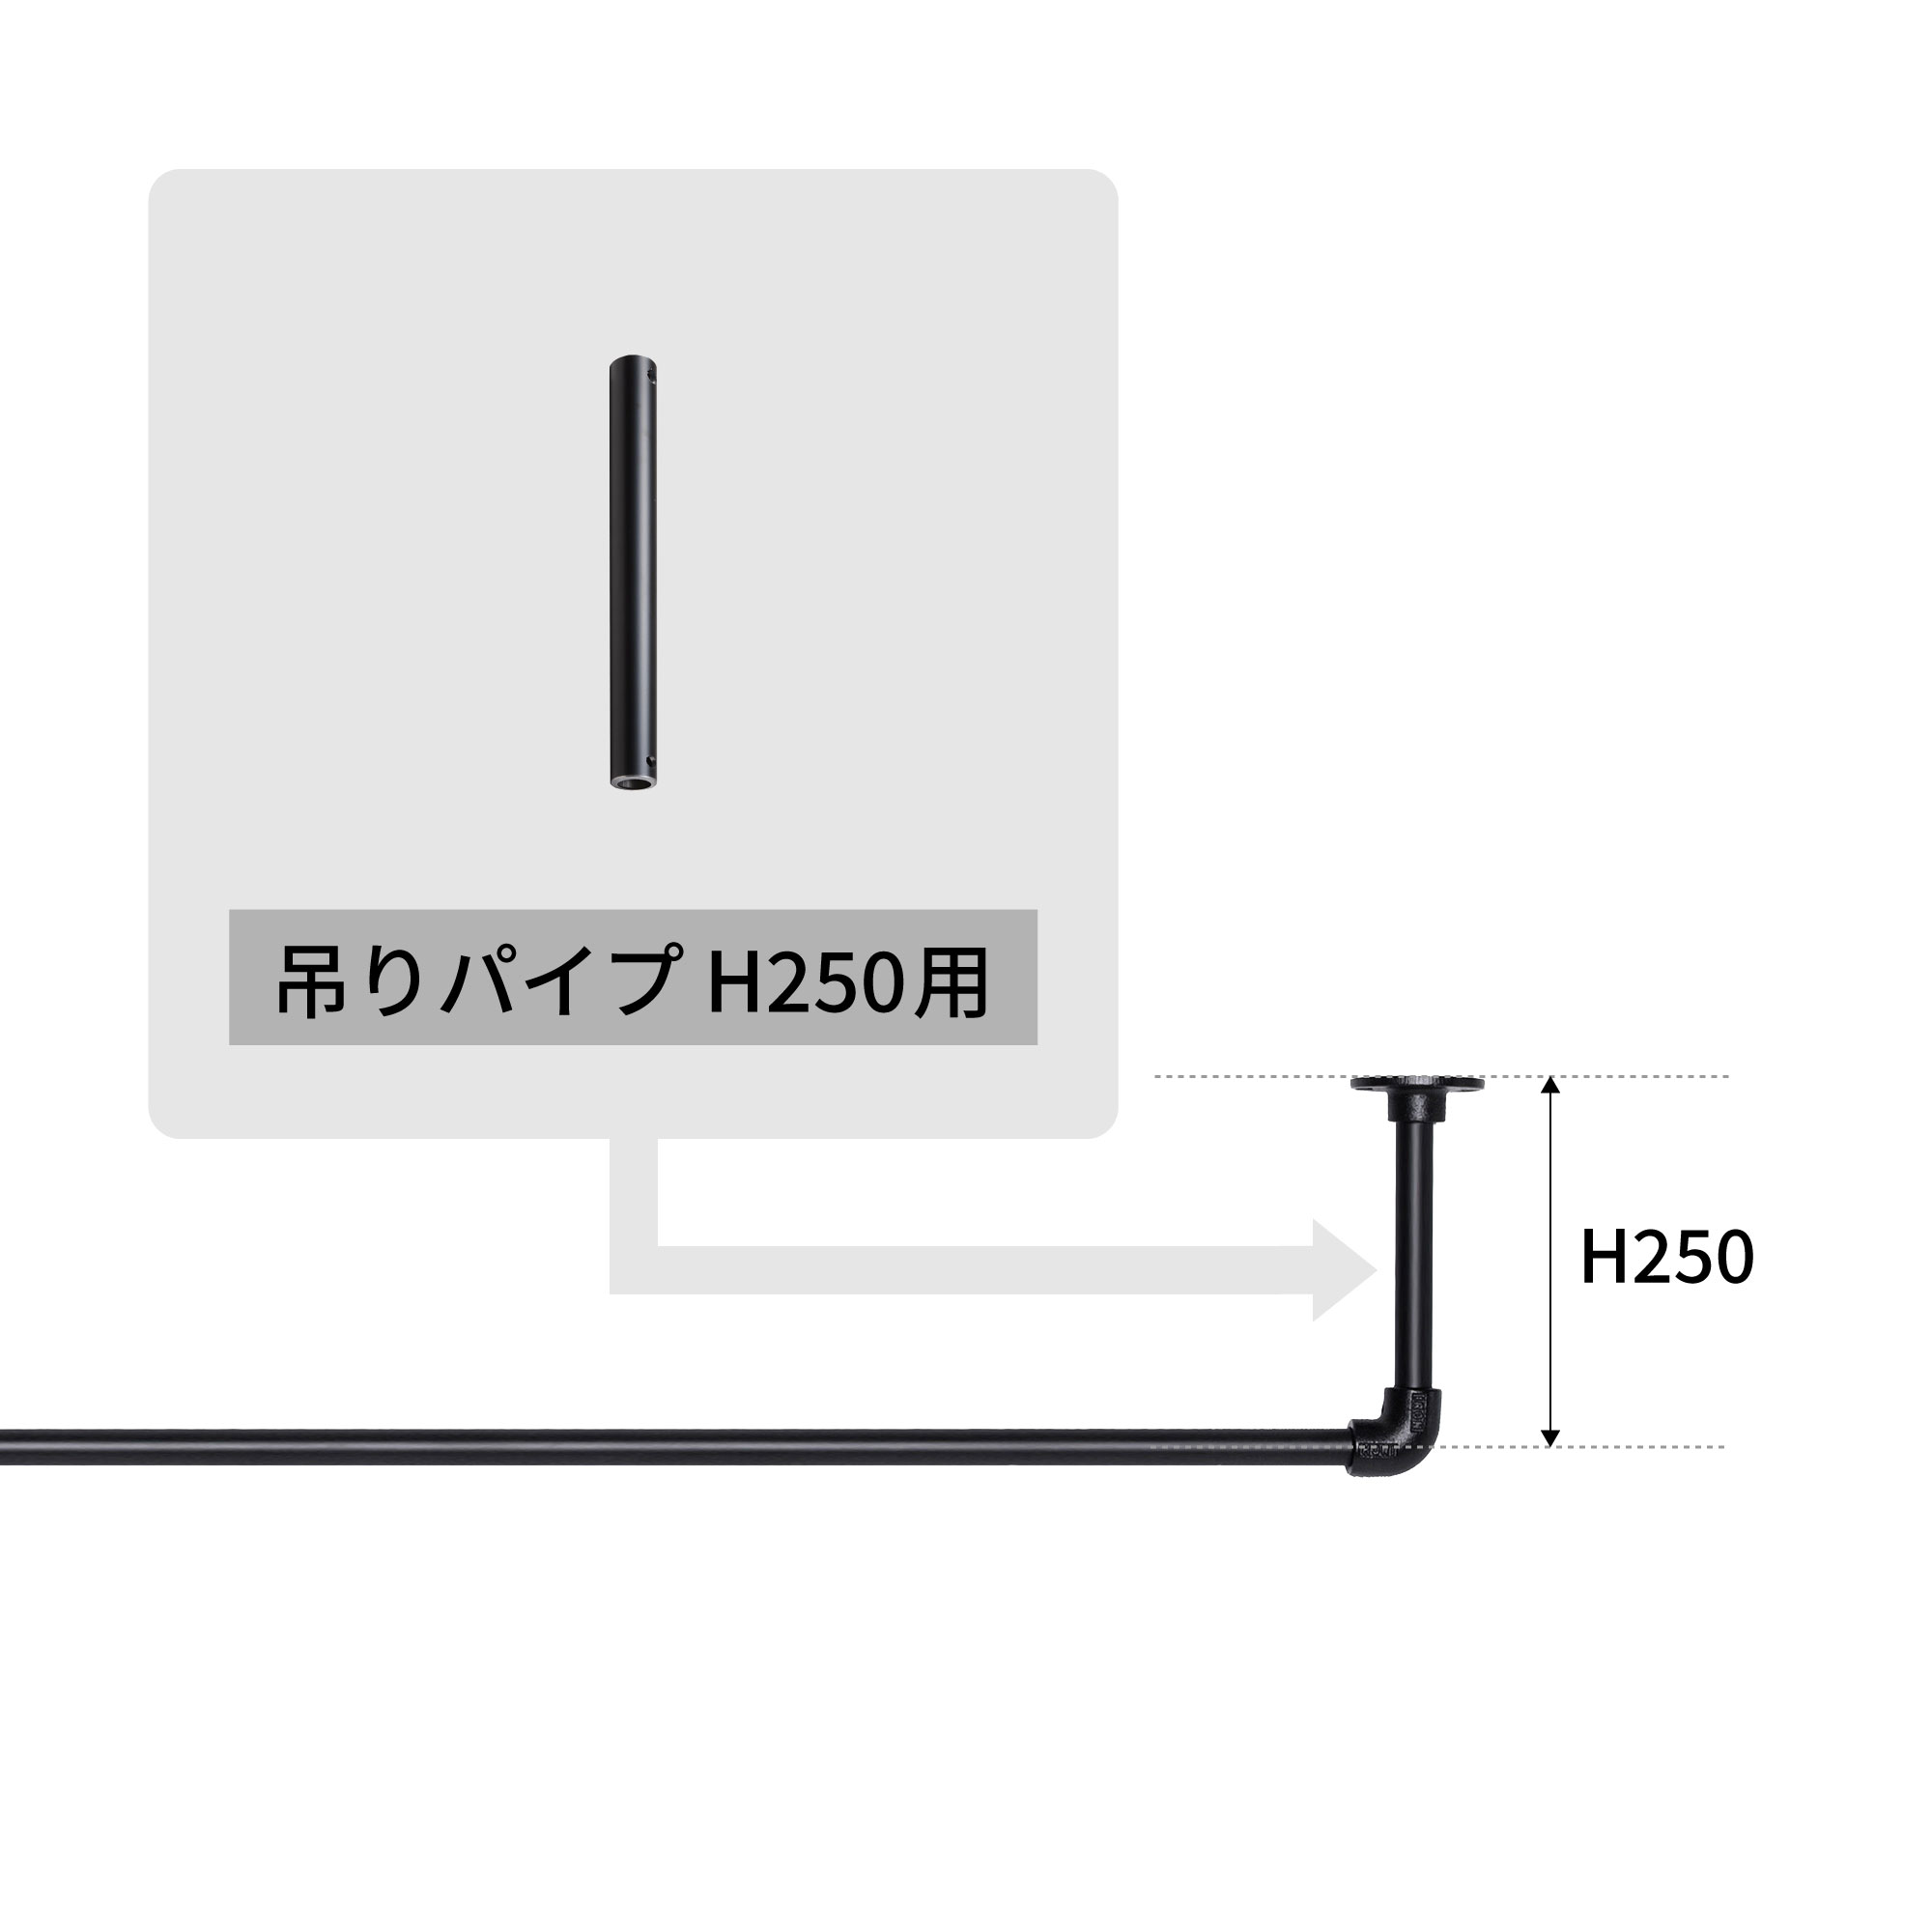 アイアンハンガーパイプ 吊りパイプ H250用 ブラック PS-HB008-45-G141